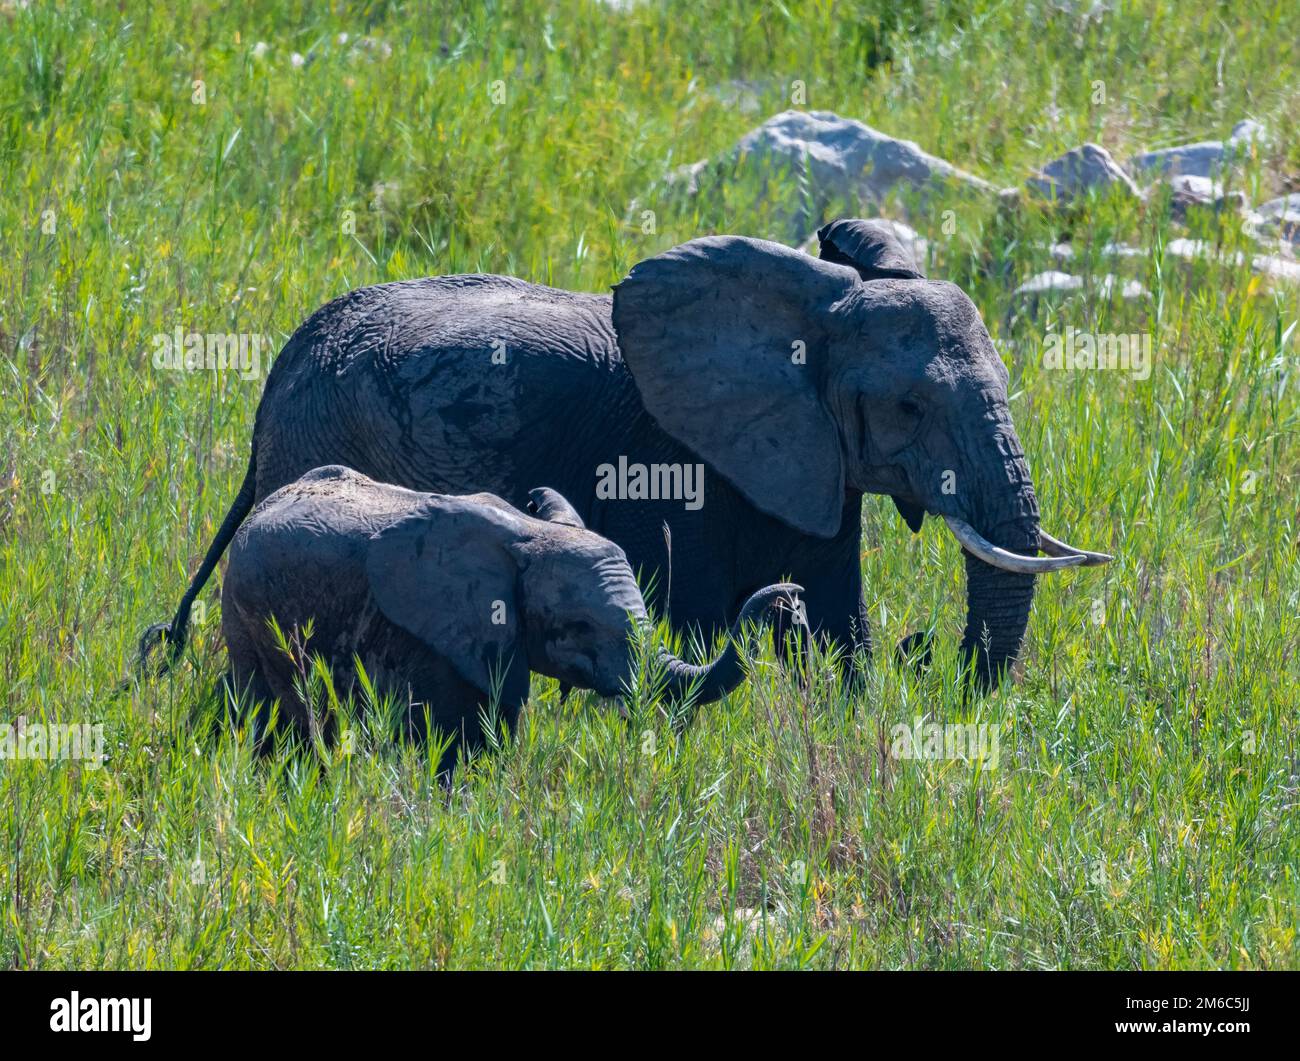 Mère et bébé éléphants (Loxodonta africana) dans l'herbe verte de la savane ouverte. Parc national Kruger, Afrique du Sud. Banque D'Images